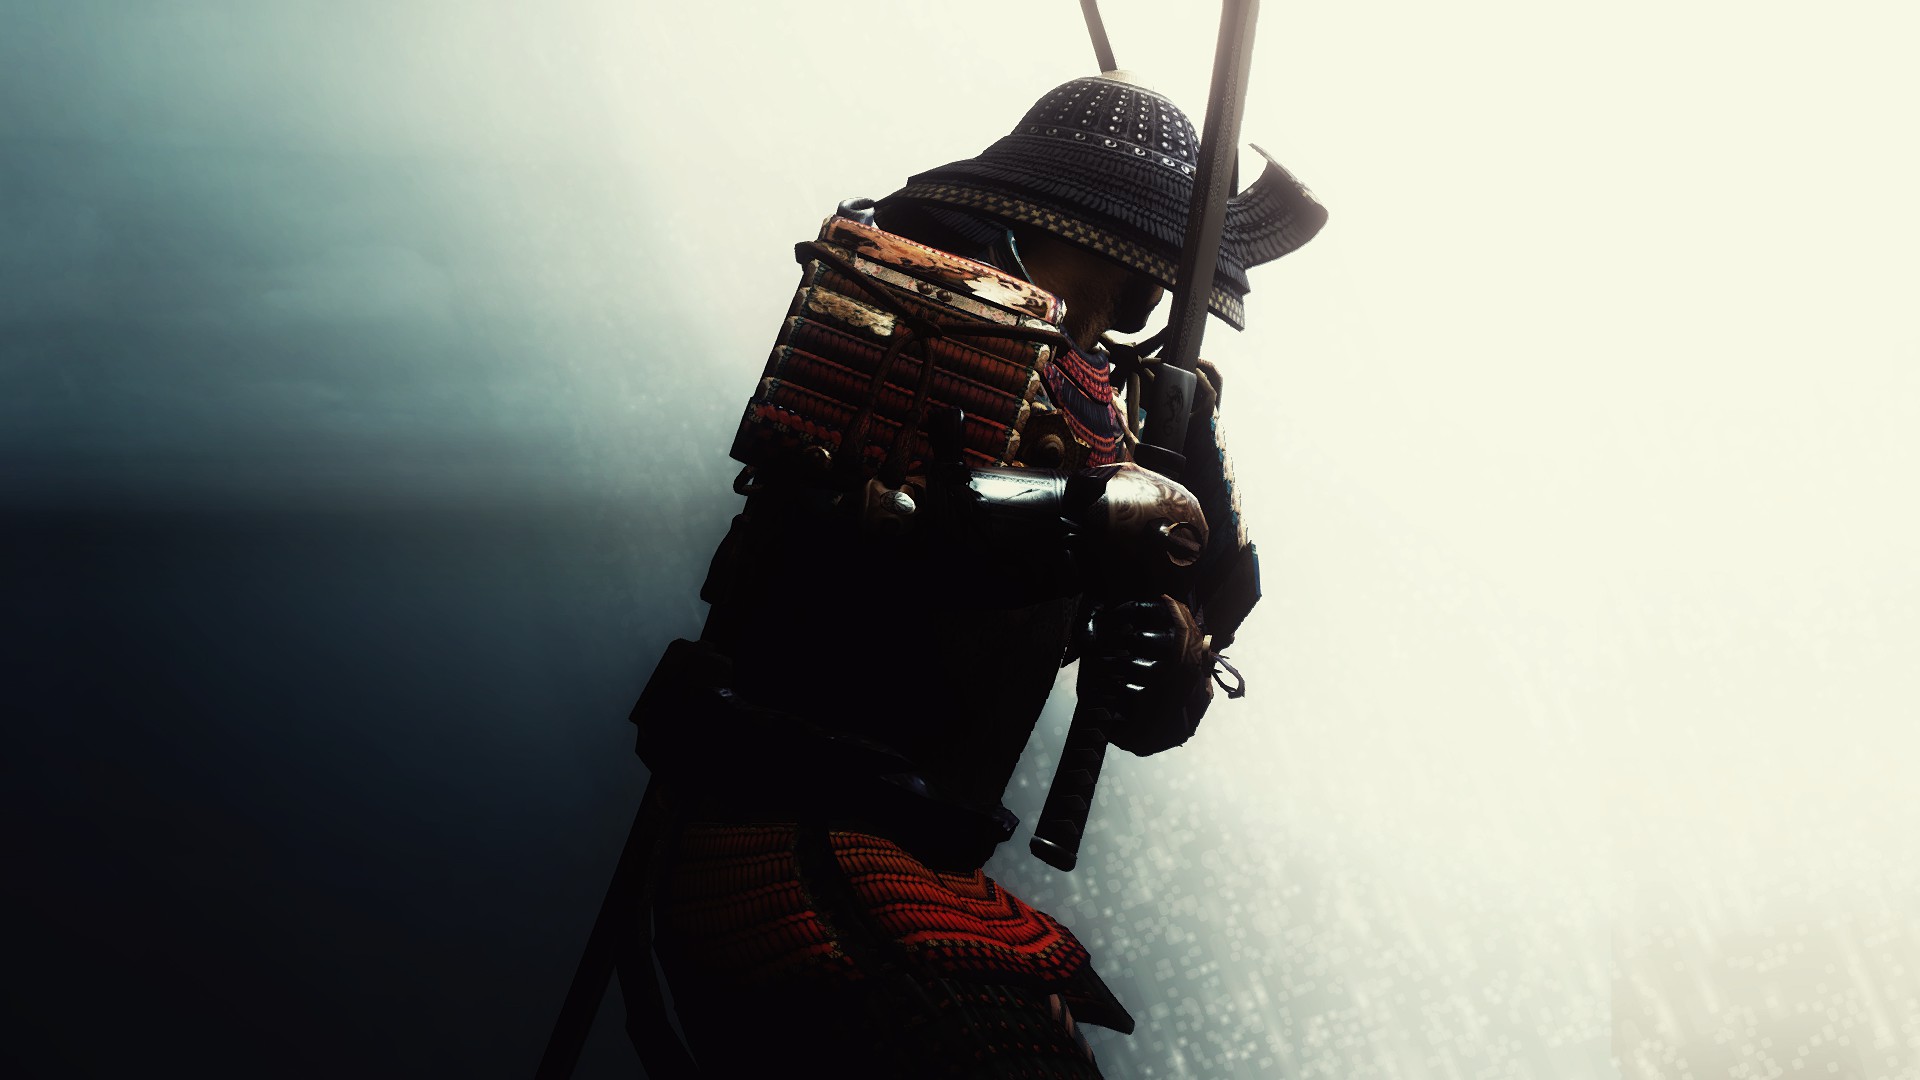 Samurai Armor Wallpapers - Wallpaper Cave